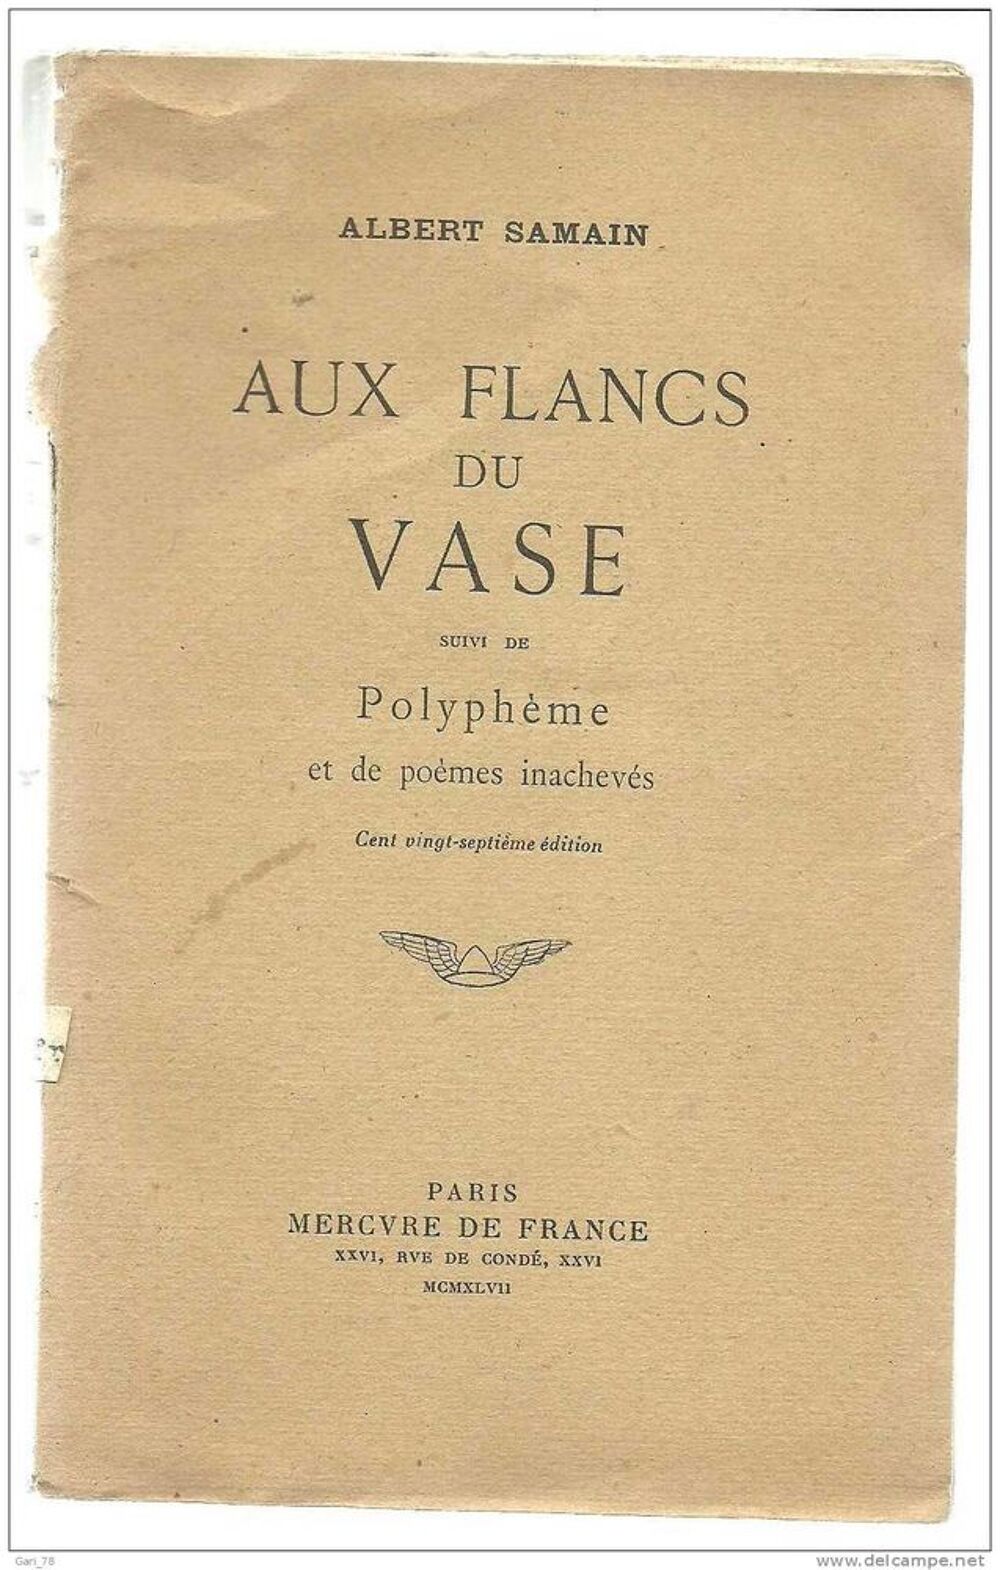 Albert SAMAIN : Aux flancs du vase suivi de polyph&egrave;me et de po&egrave;mes inachev&eacute;s - MERCURE de FRANCE 1947 Livres et BD